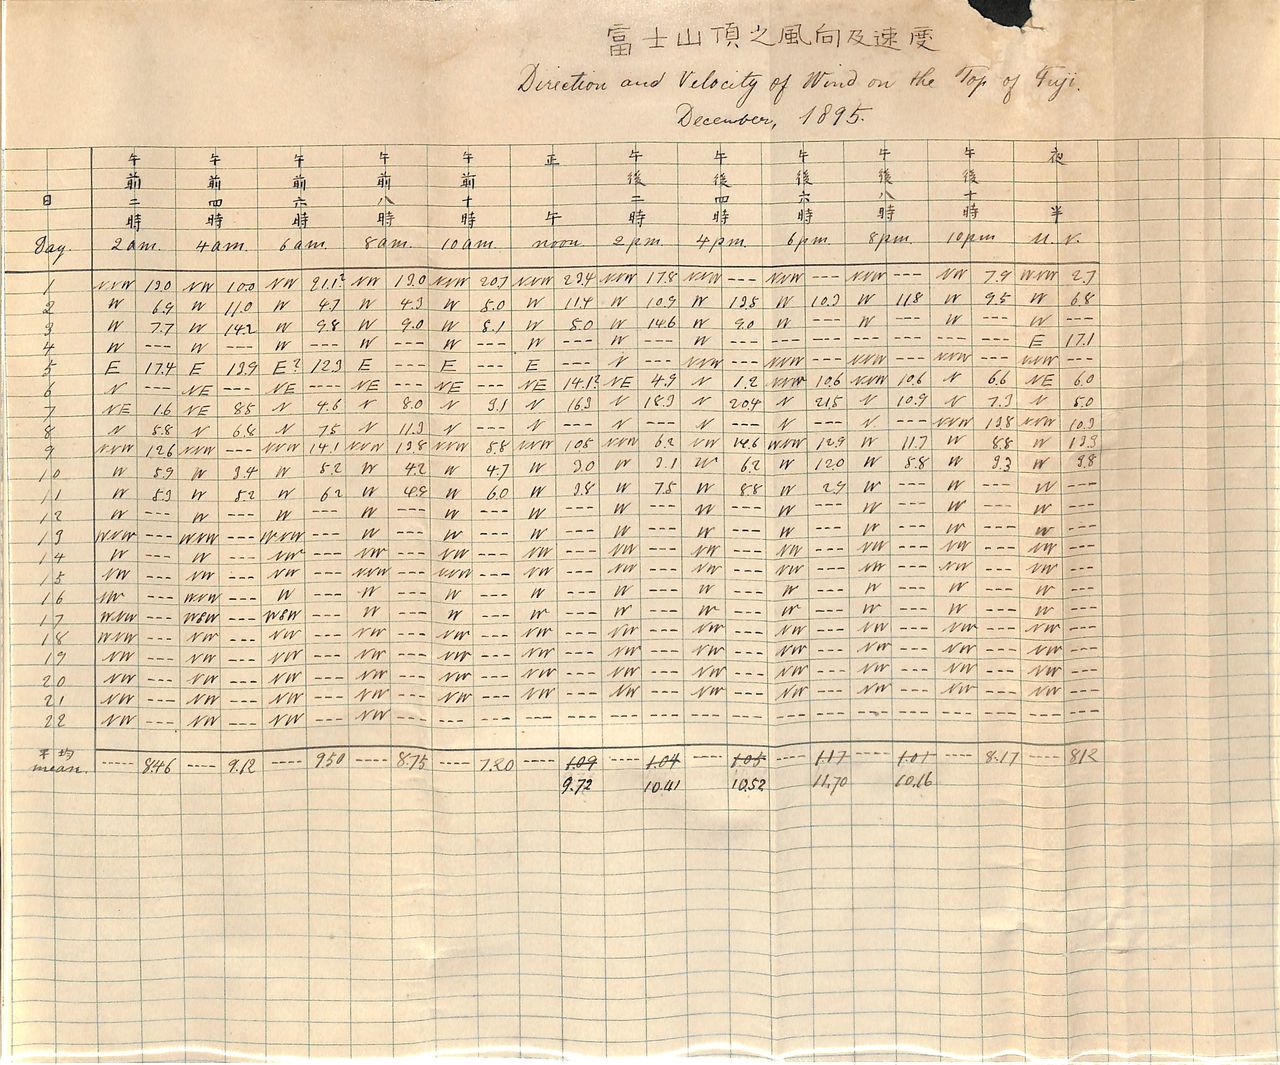 Relevés météorologiques effectués par Itaru et Chiyoko, les époux Nonaka. Le dernier relevé est daté du 22 décembre 1895, le jour où ils furent contraints de quitter le sommet. (Photo avec l’aimable autorisation des archives numériques de Nonaka Itaru et Chiyoko. Le document originel appartient à Nonaka Masaru, leur petit-fils.)